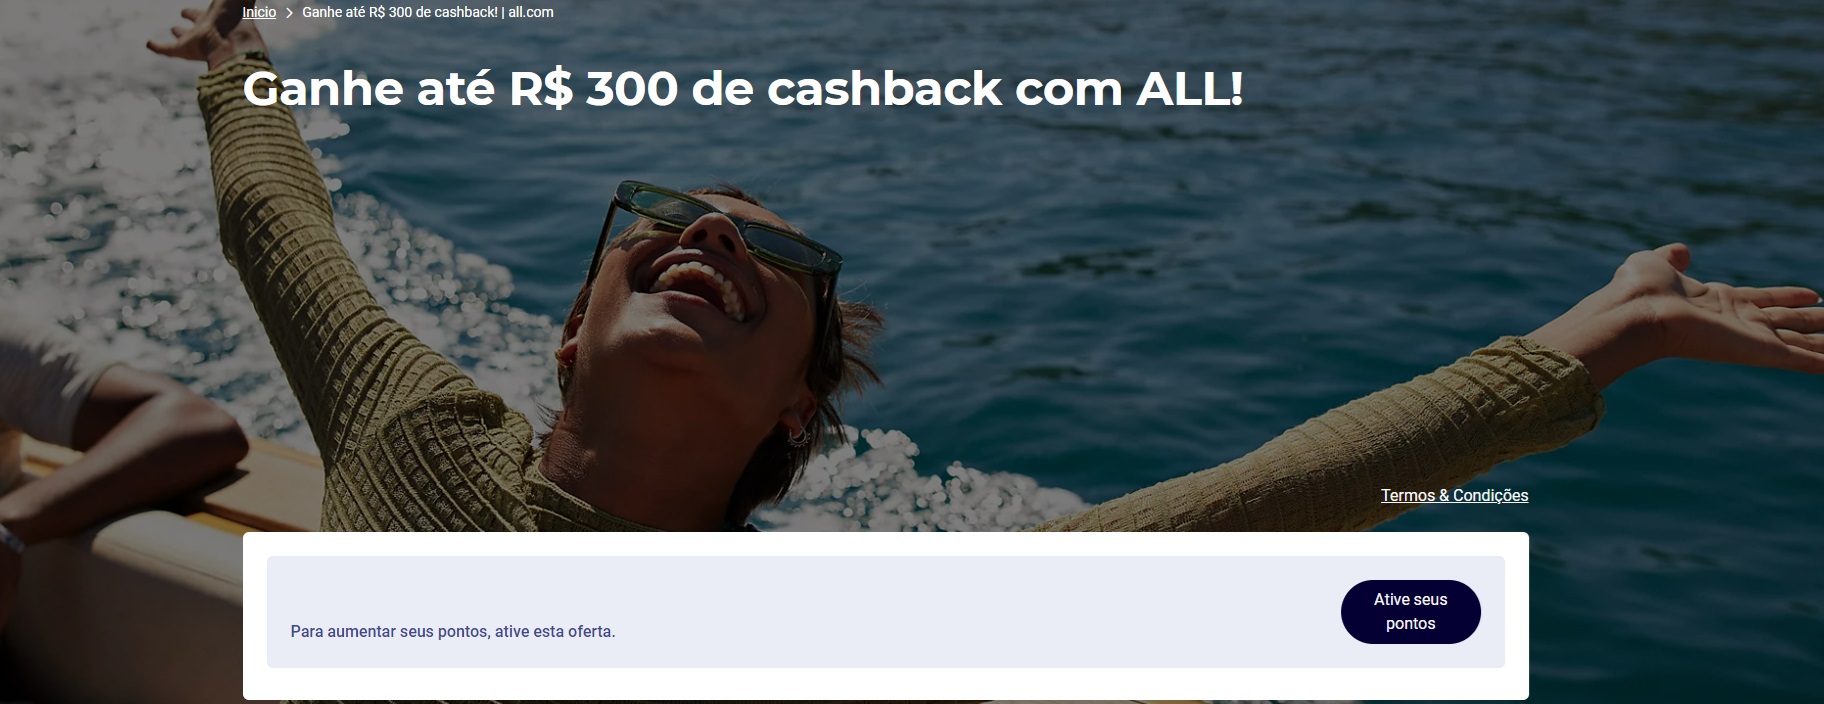 Notícias: Boa Notícia! Ganhe até R$ 300 de cashback com ALL Accor! 